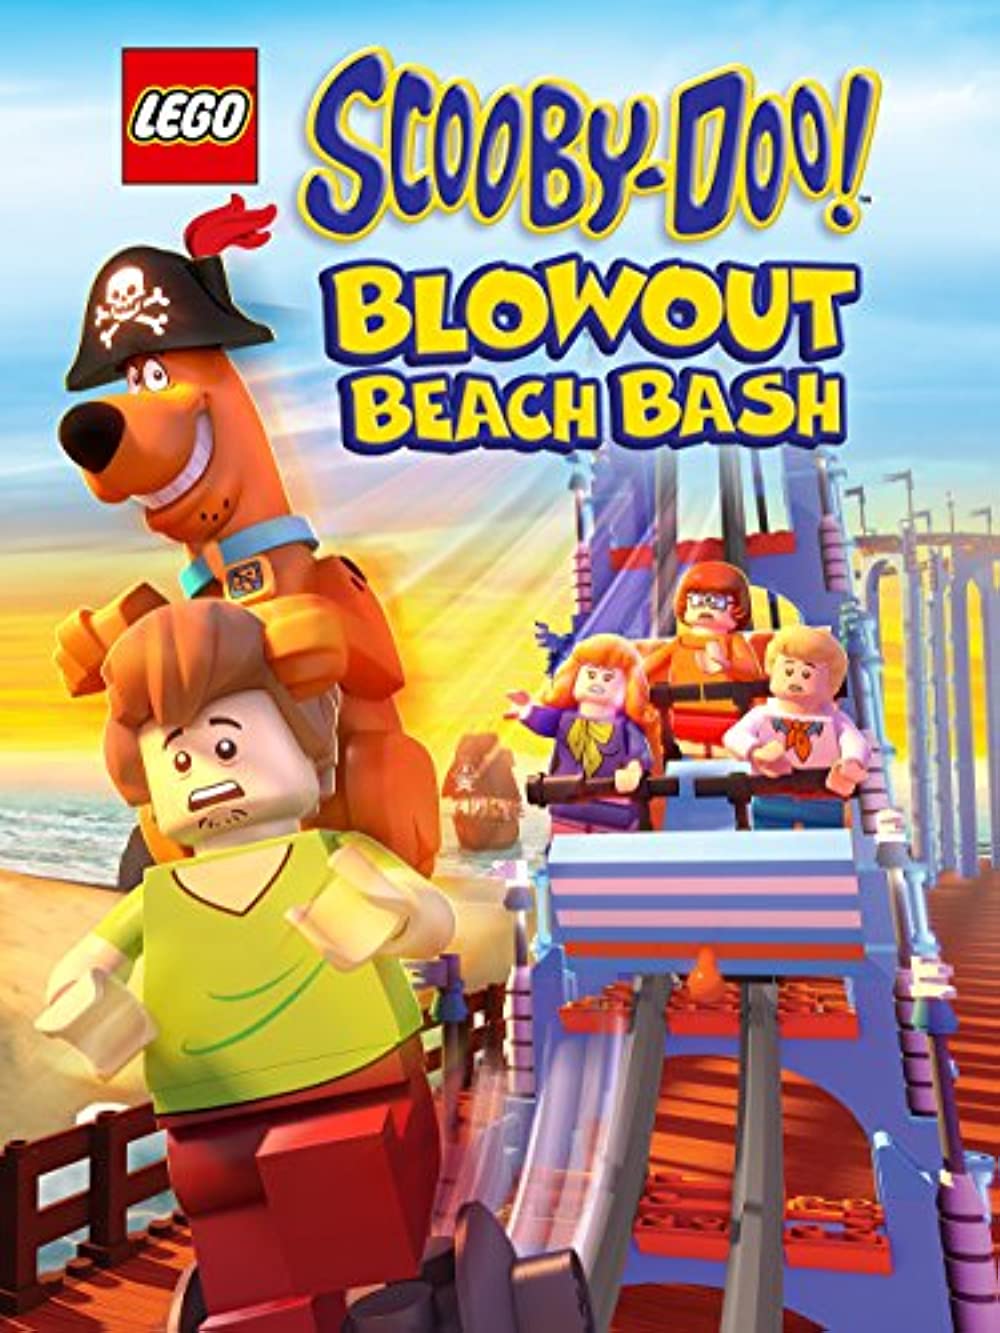 LEGO Scooby-Doo! Blowout Beach Bash (2017) เลโก้ สคูบี้ดู ตะลุยหาดปีศาจโจรสลัด พากย์ไทย